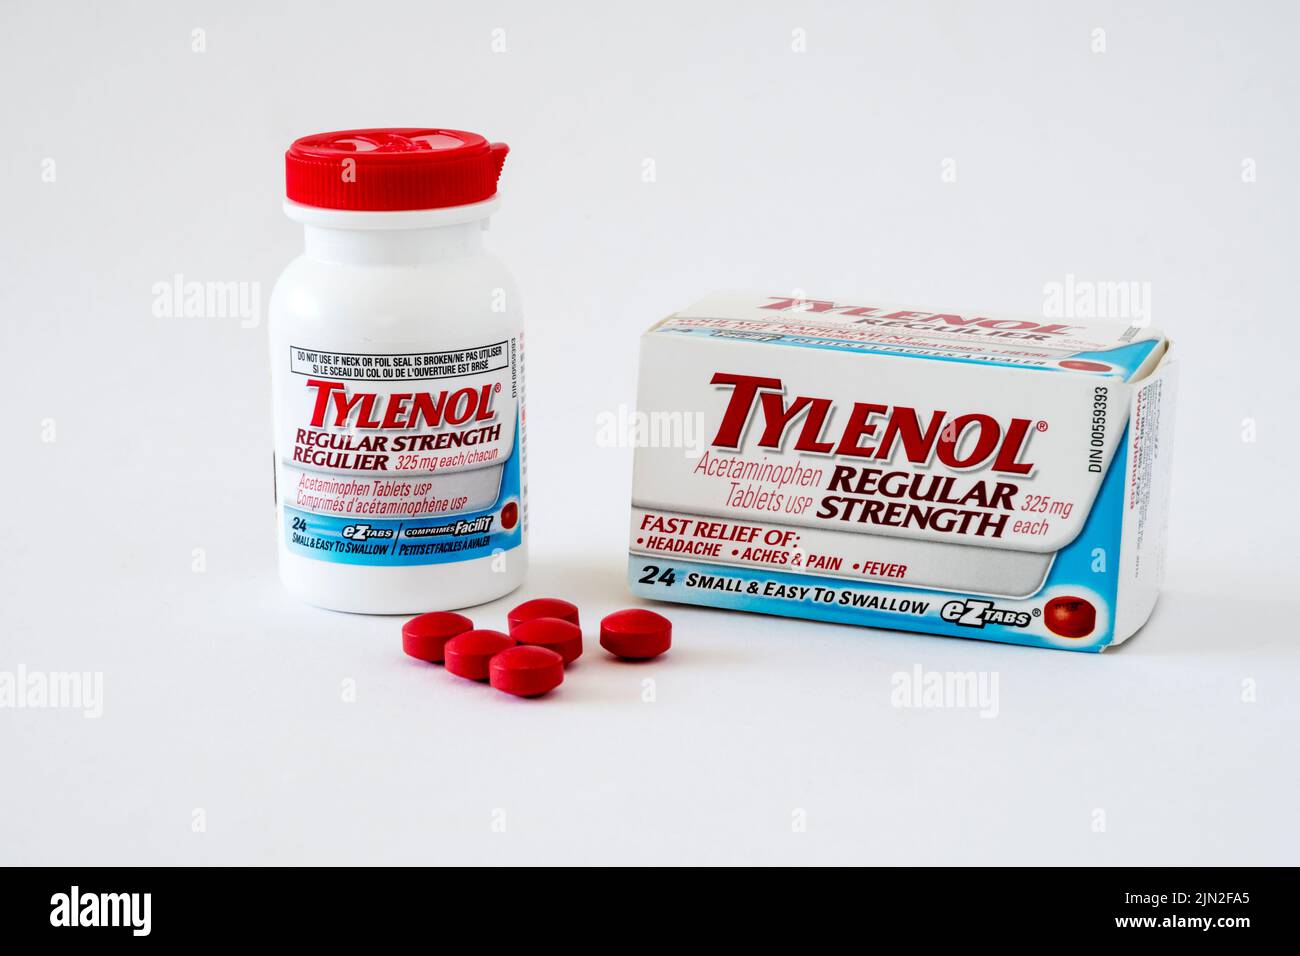 Tylenol Tabletas regulares de acetaminofén. Foto de stock